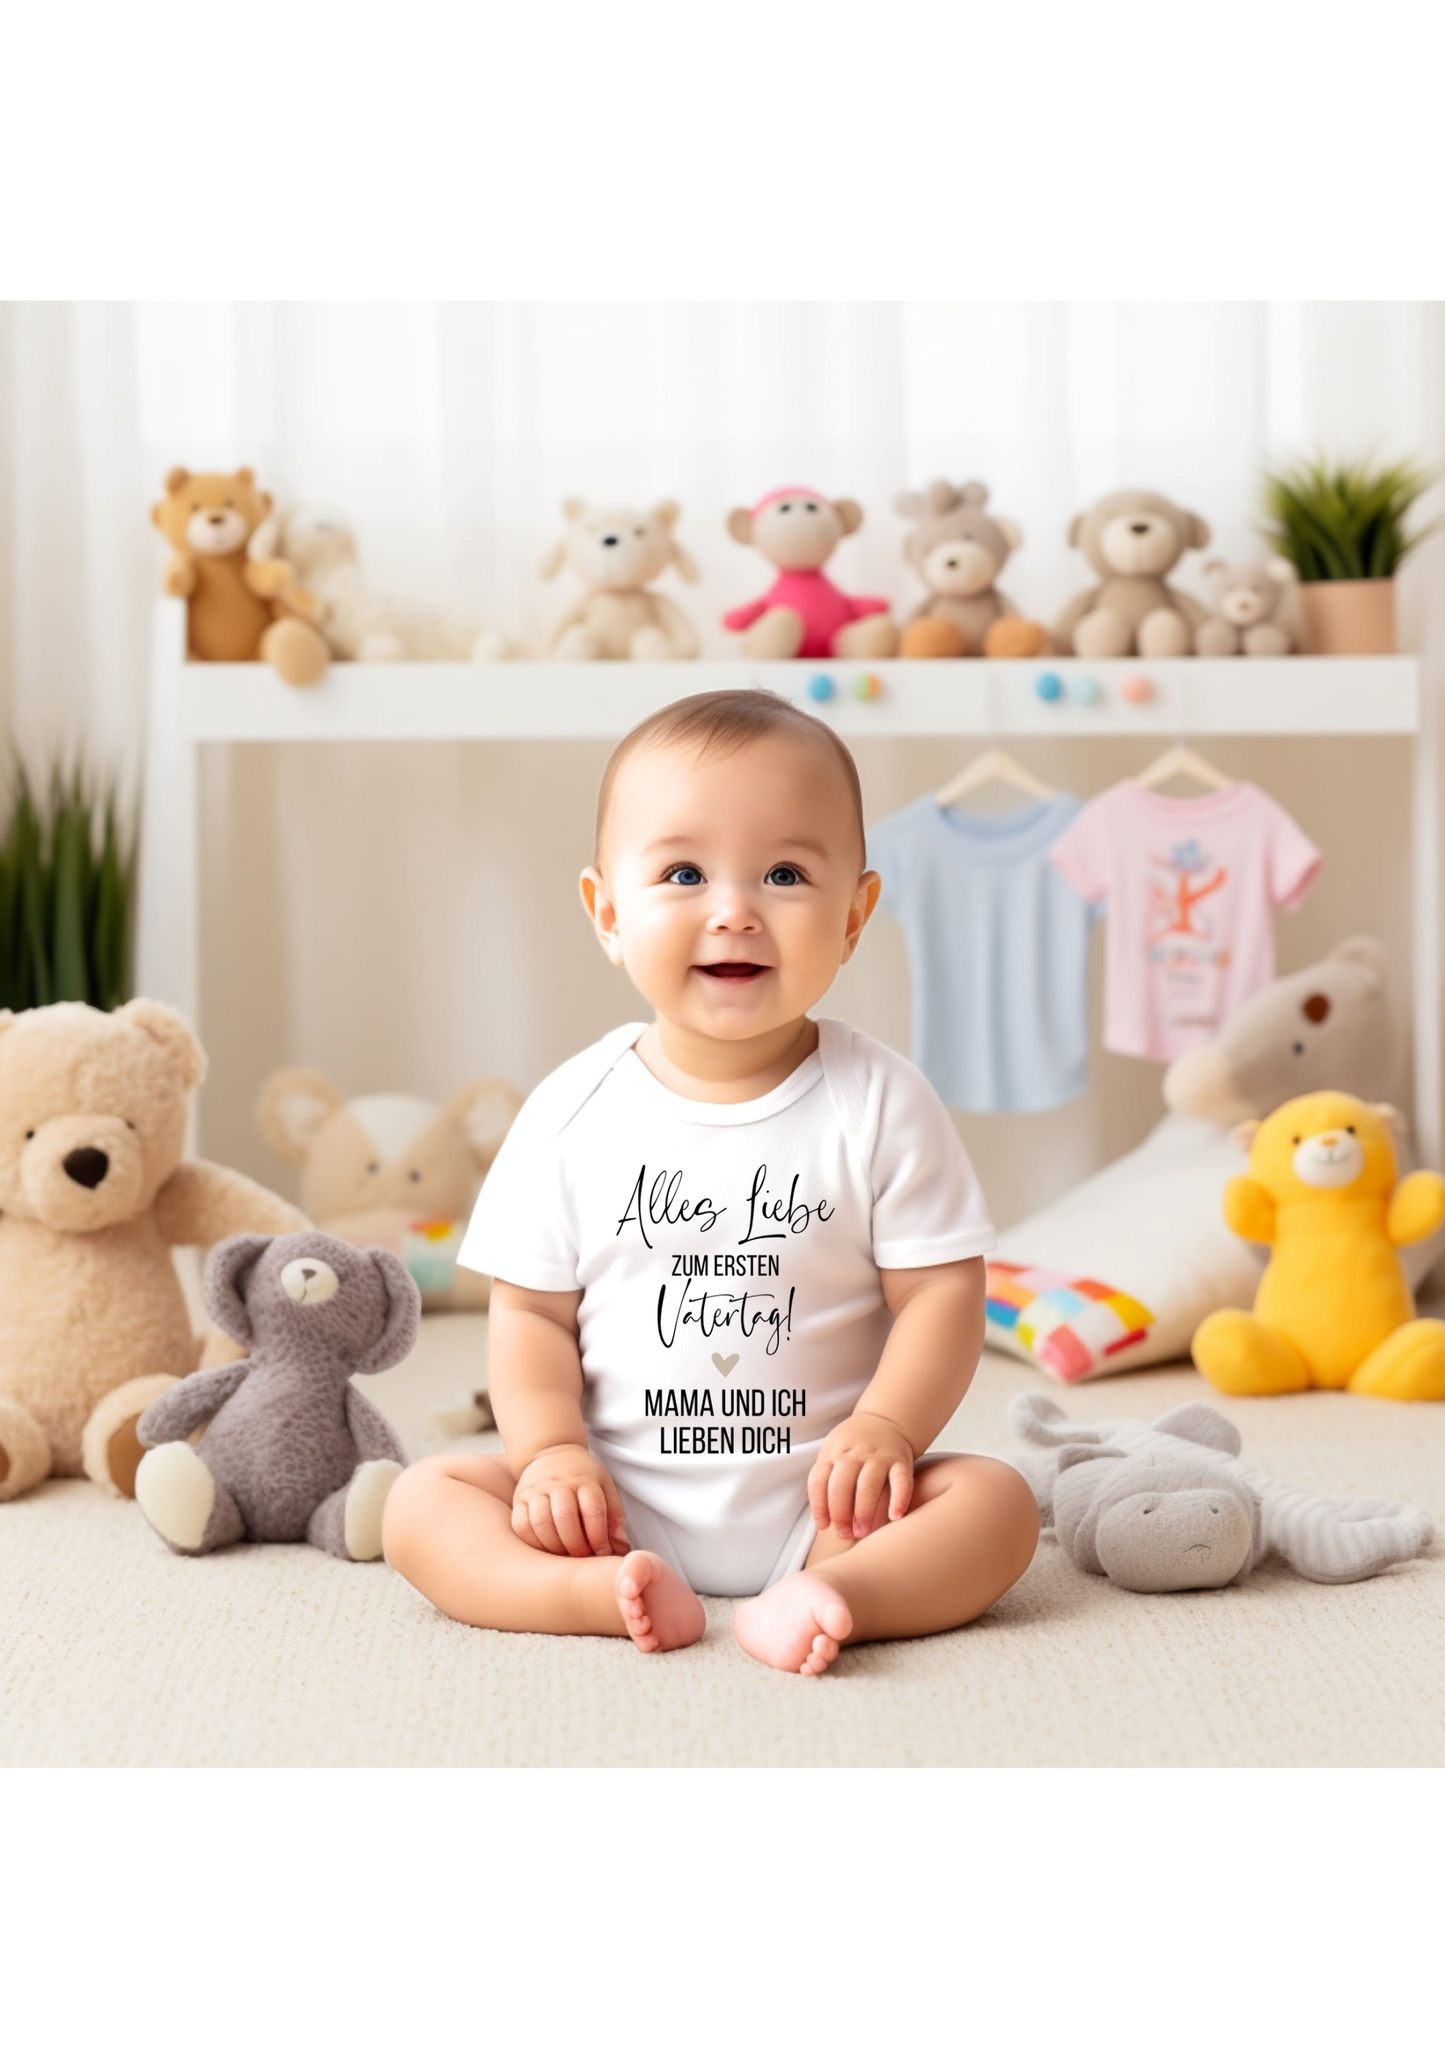 Kuscheliger Babybody: Weiche und bequeme Kleidung für Ihr Baby!